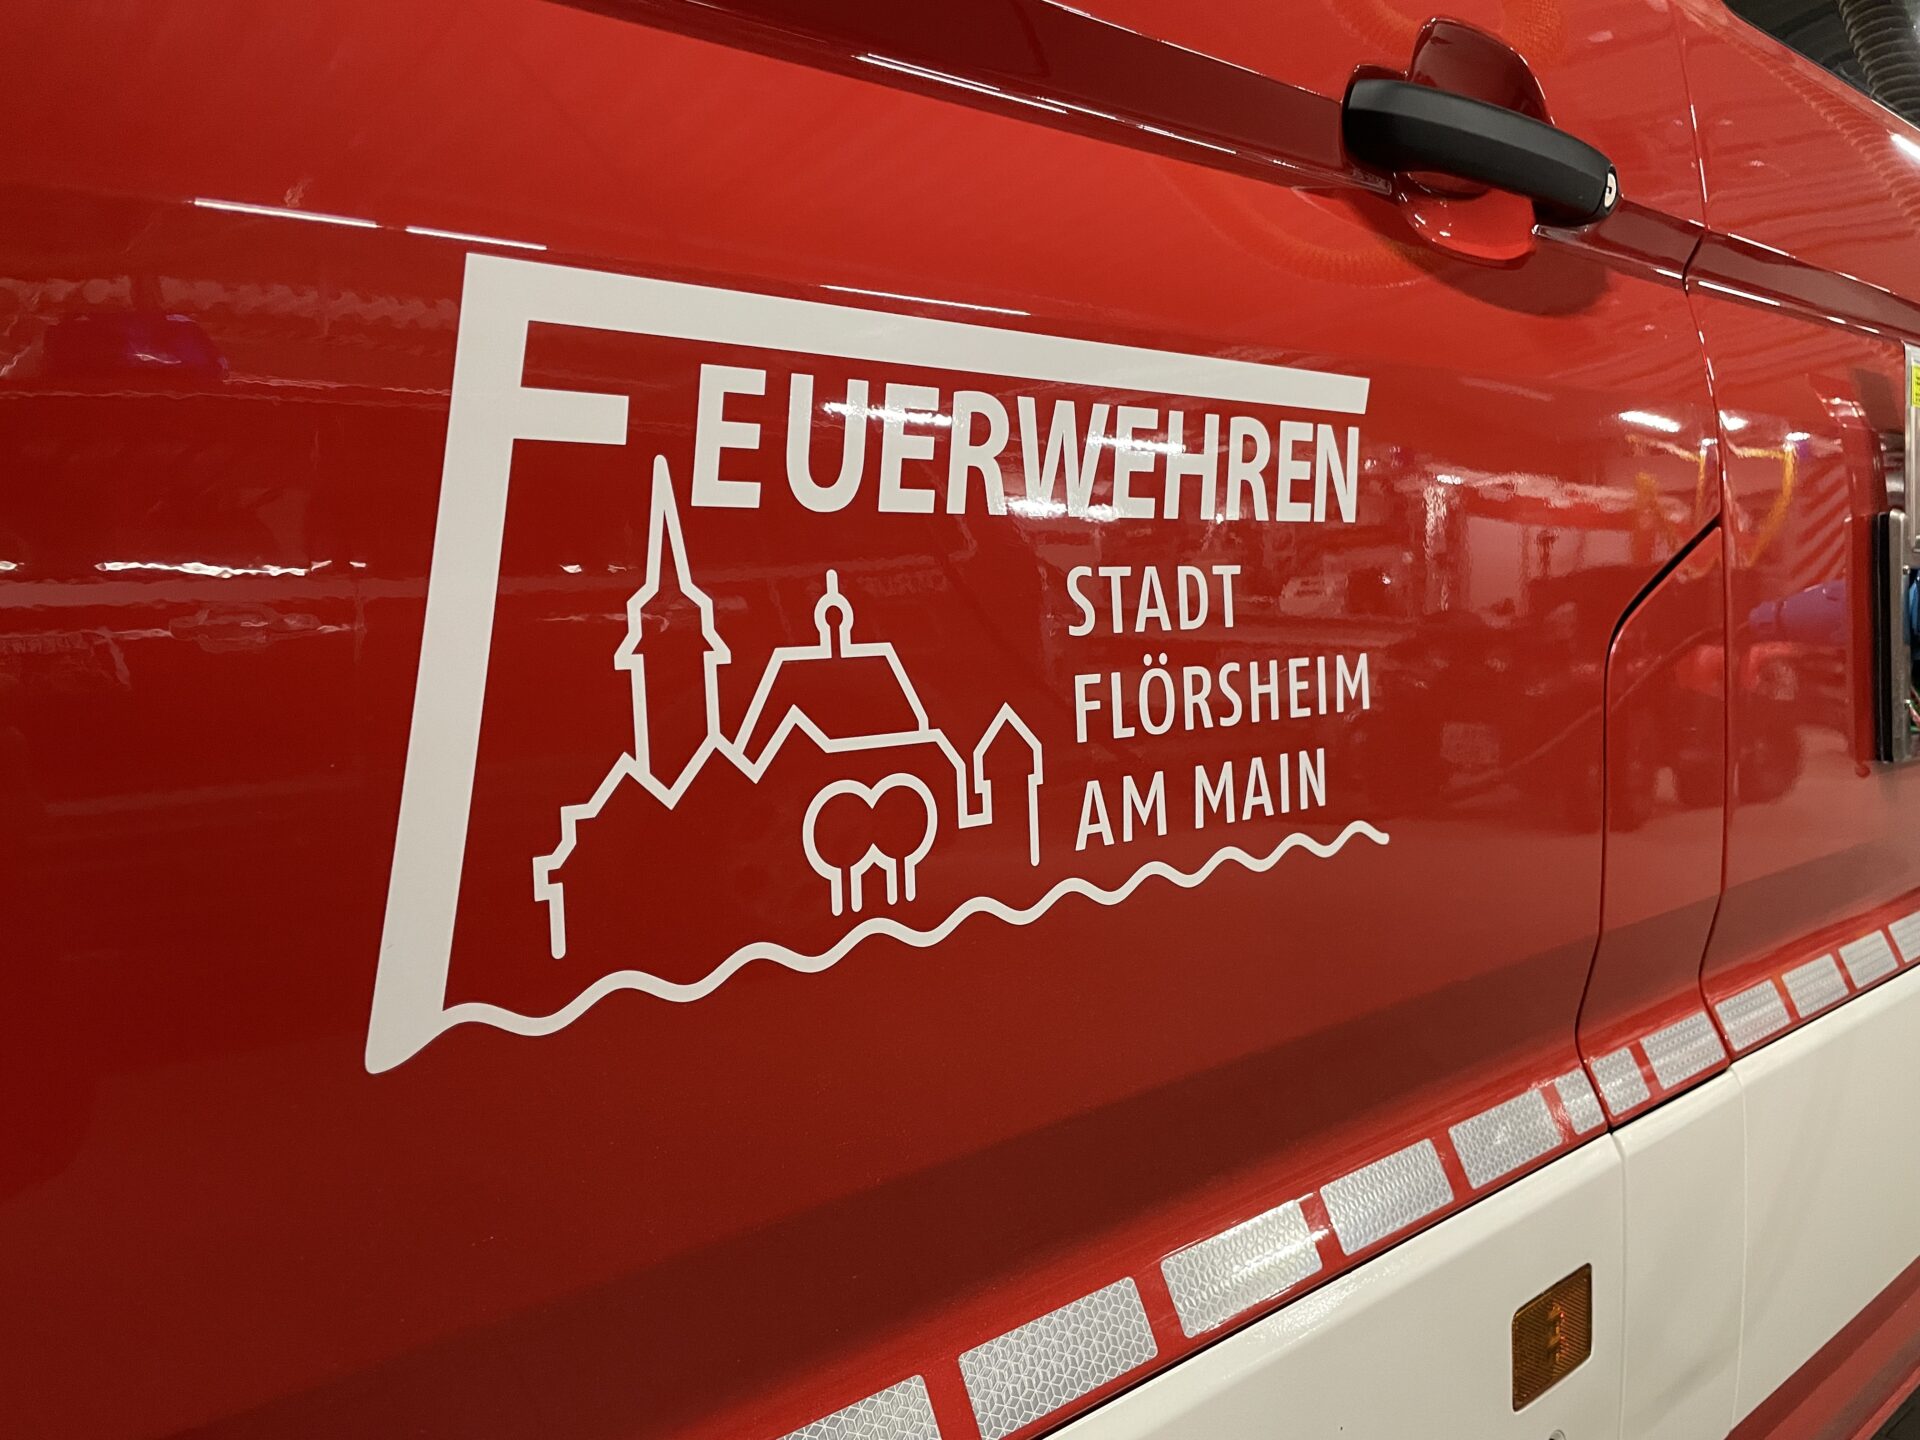 (c) Feuerwehrfloersheim.de